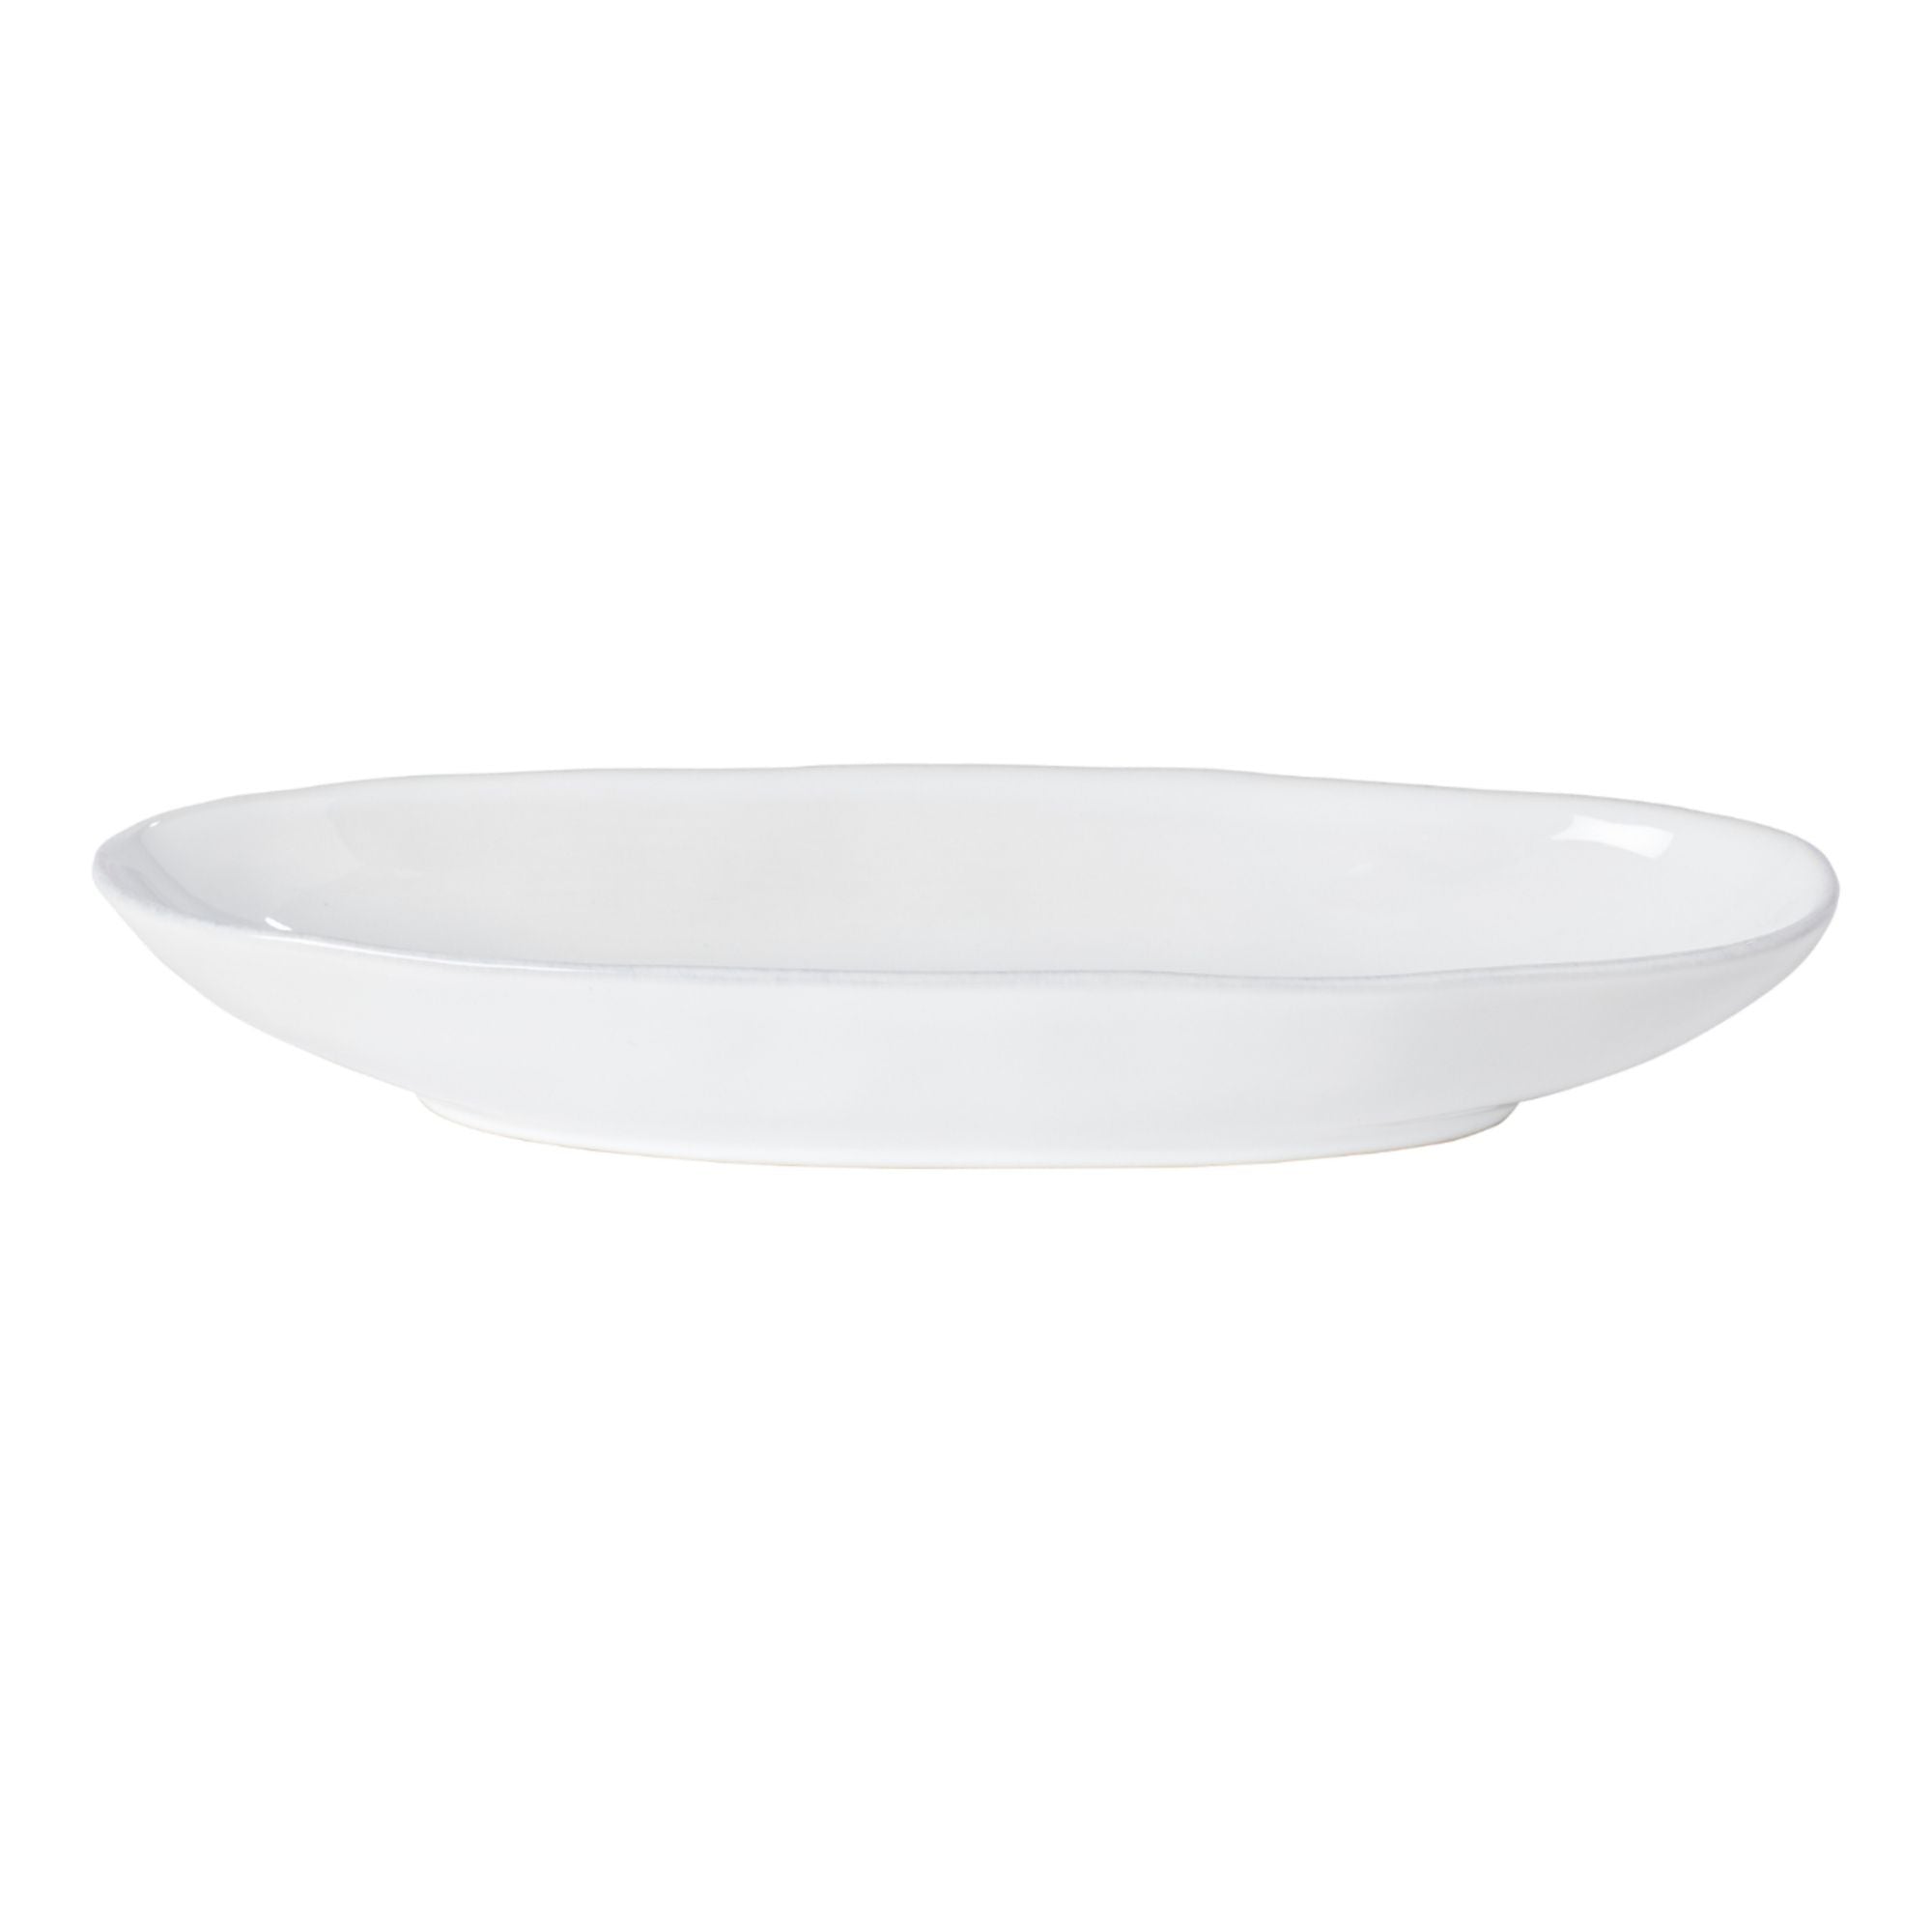 Livia Oval Platter 13" White